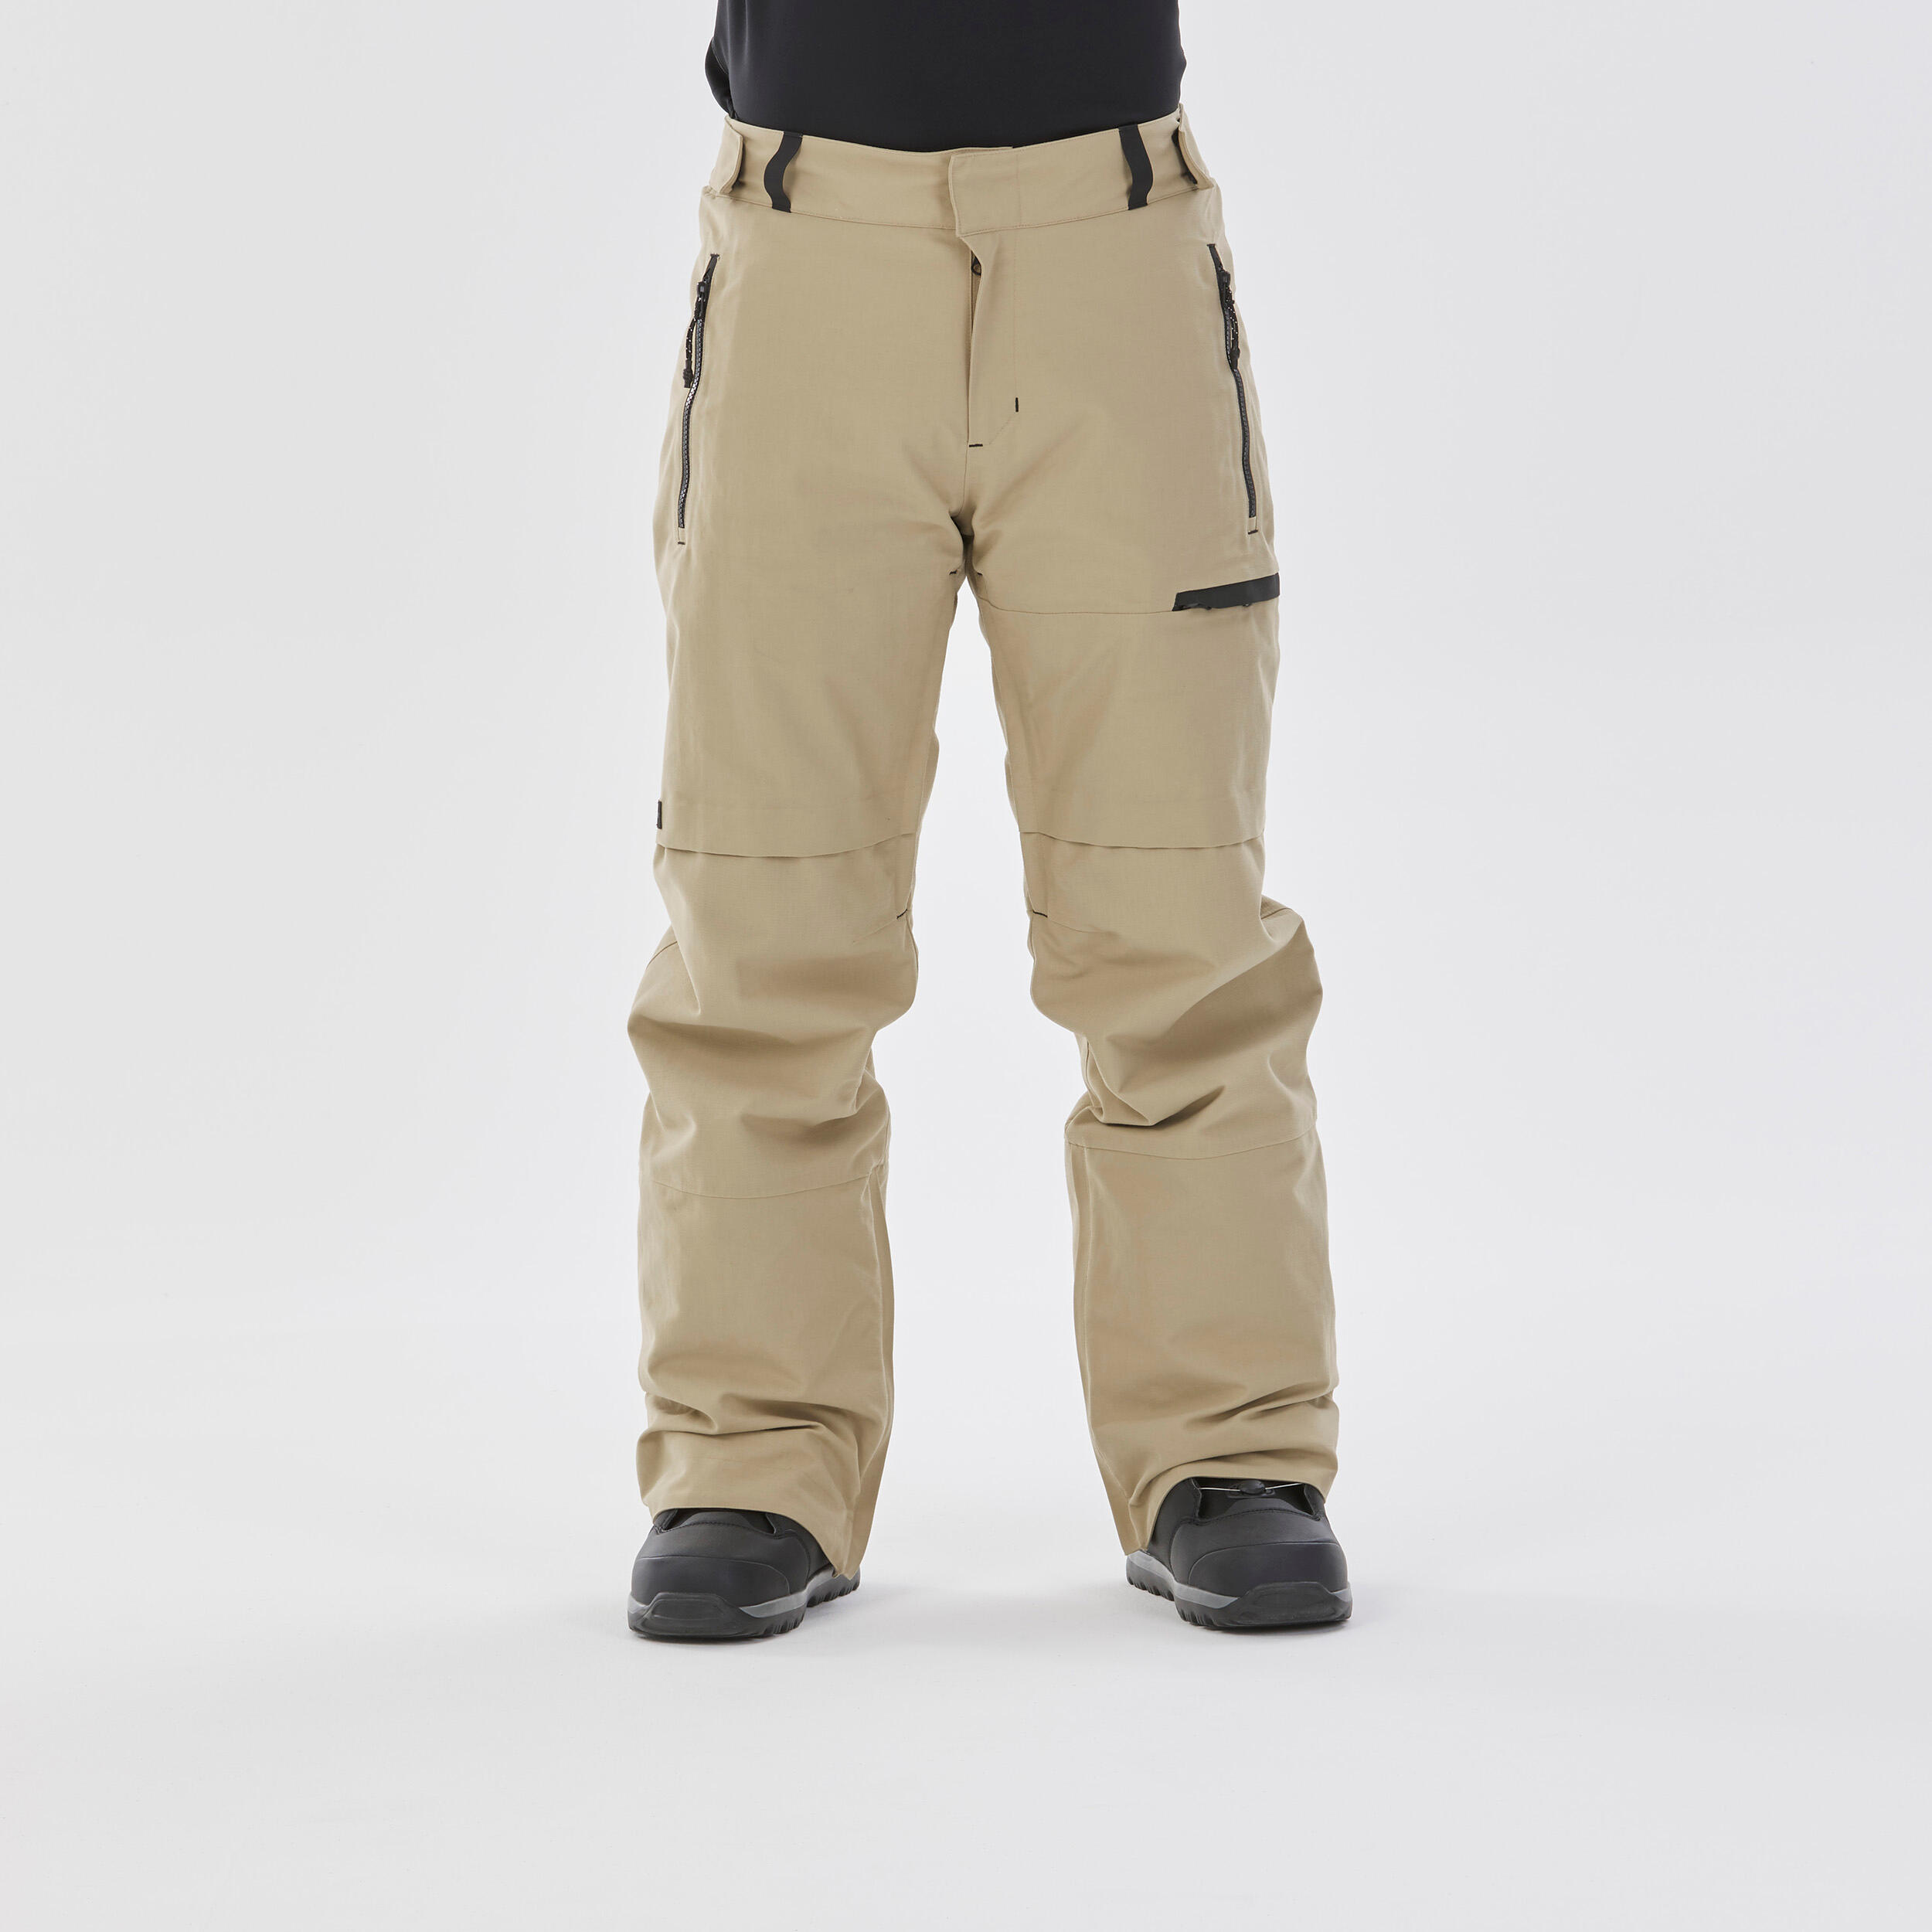 Men’s Snowboard Pants - SNB 500 Beige